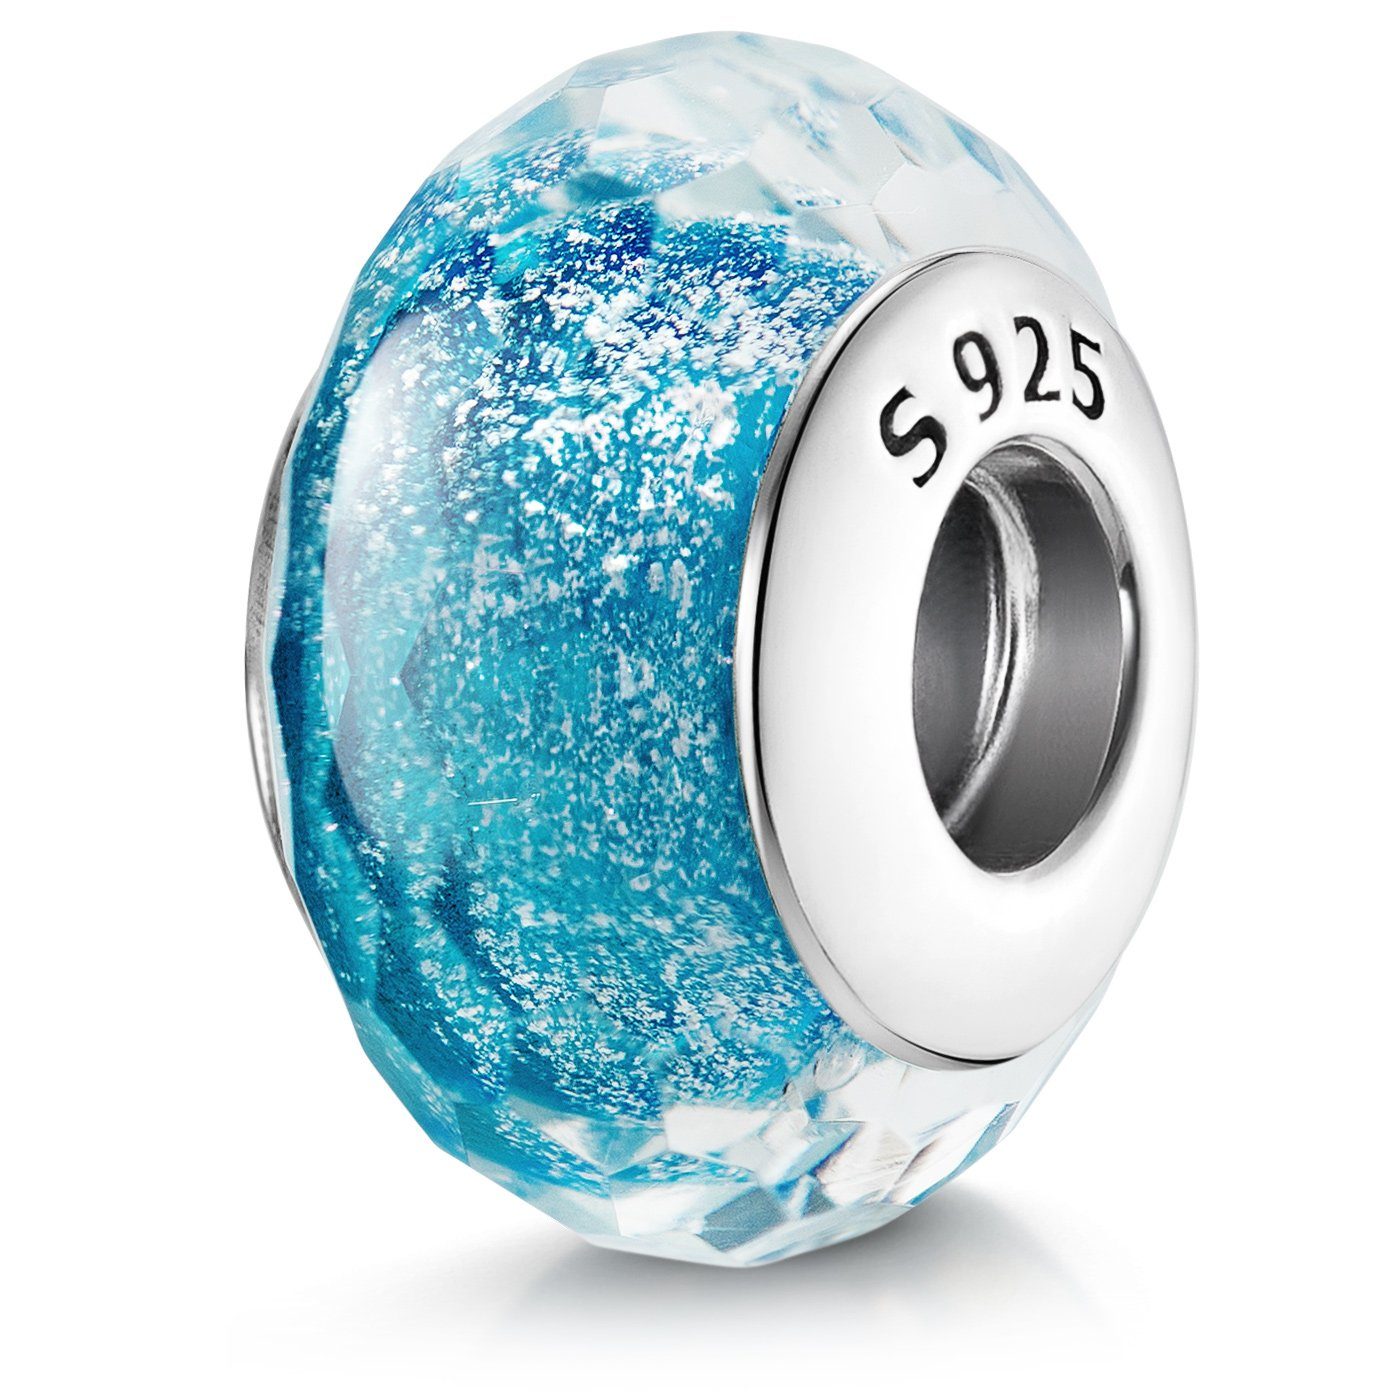 Materia Bead Blau / Hellblau Glitter facettiert 528, 925 Sterling Silber, mit Gewinde